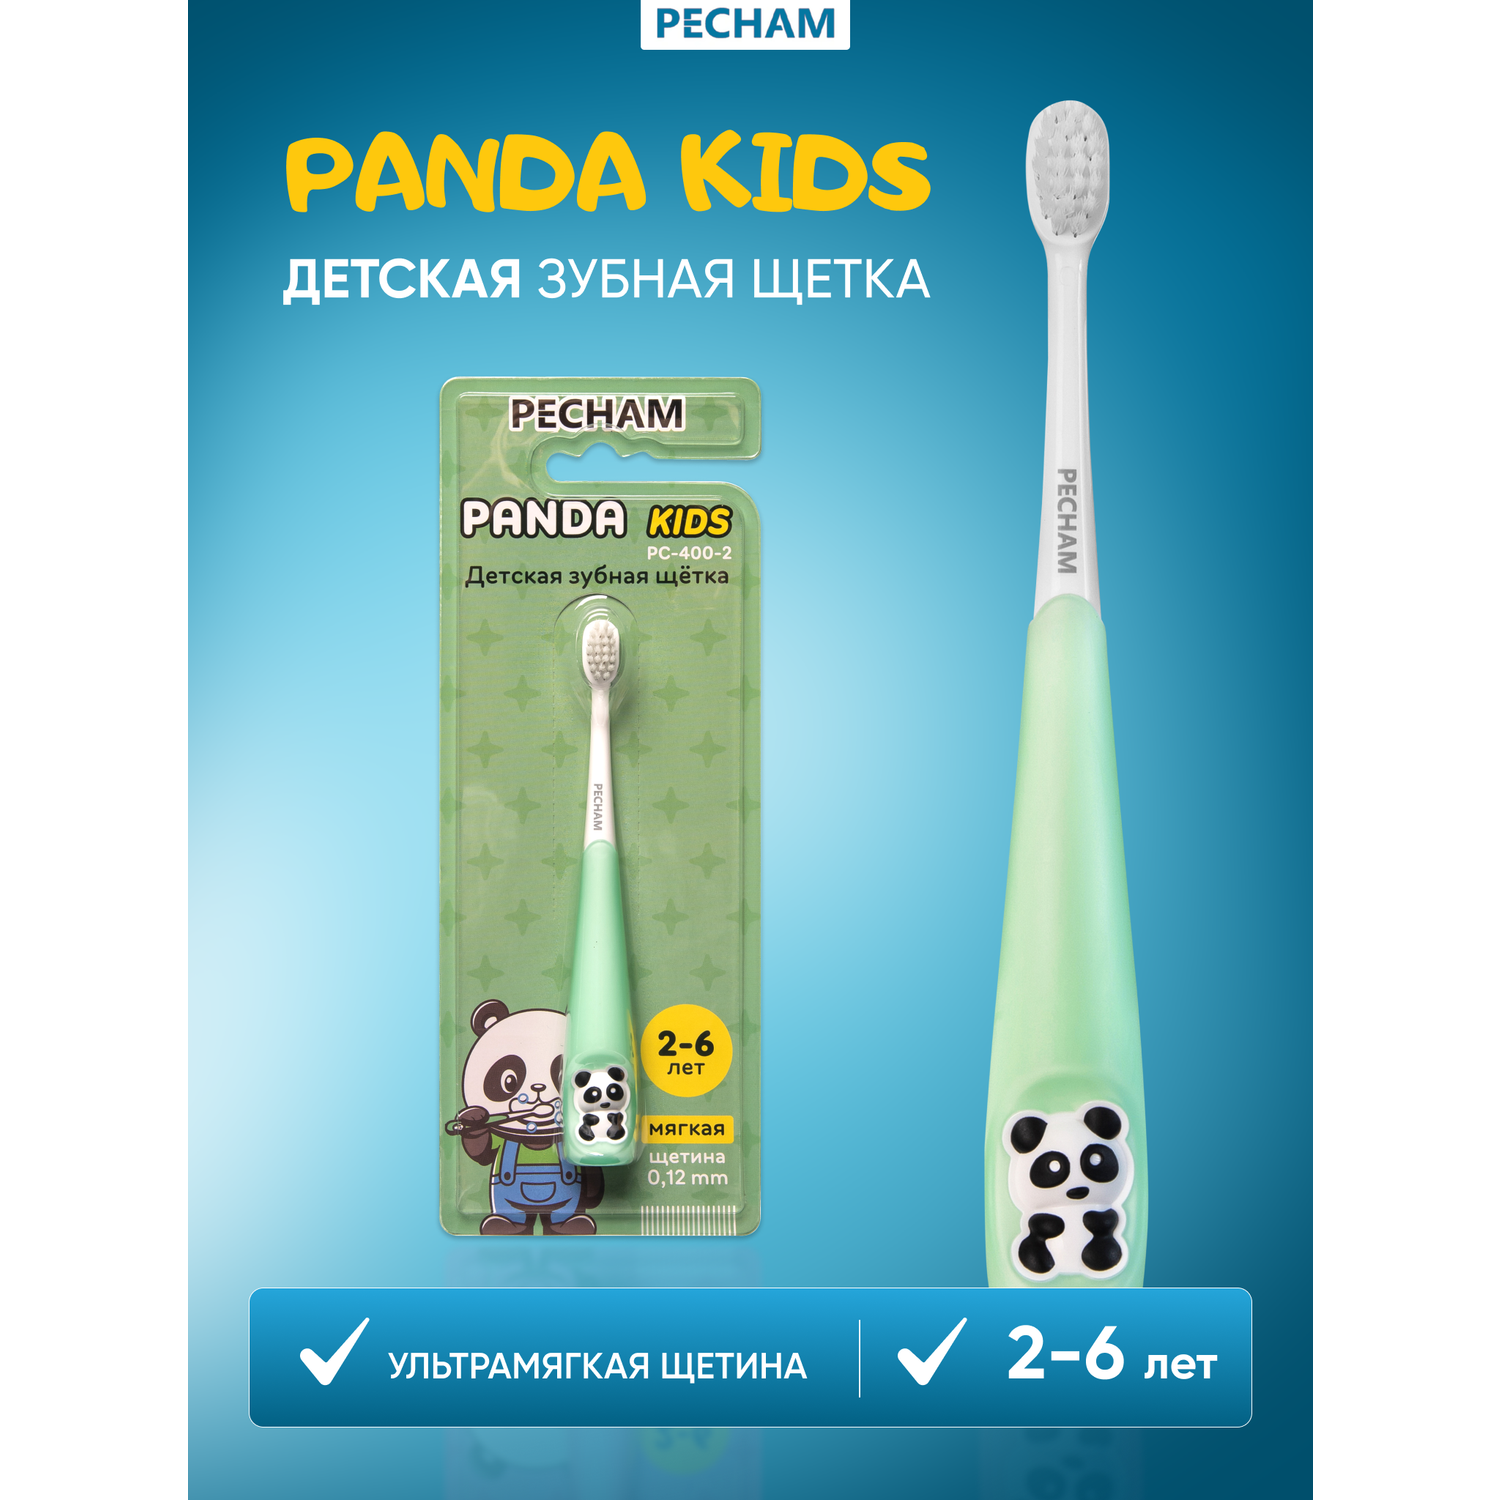 Детская зубная щетка PECHAM Panda Kids PC-400-2 - фото 1